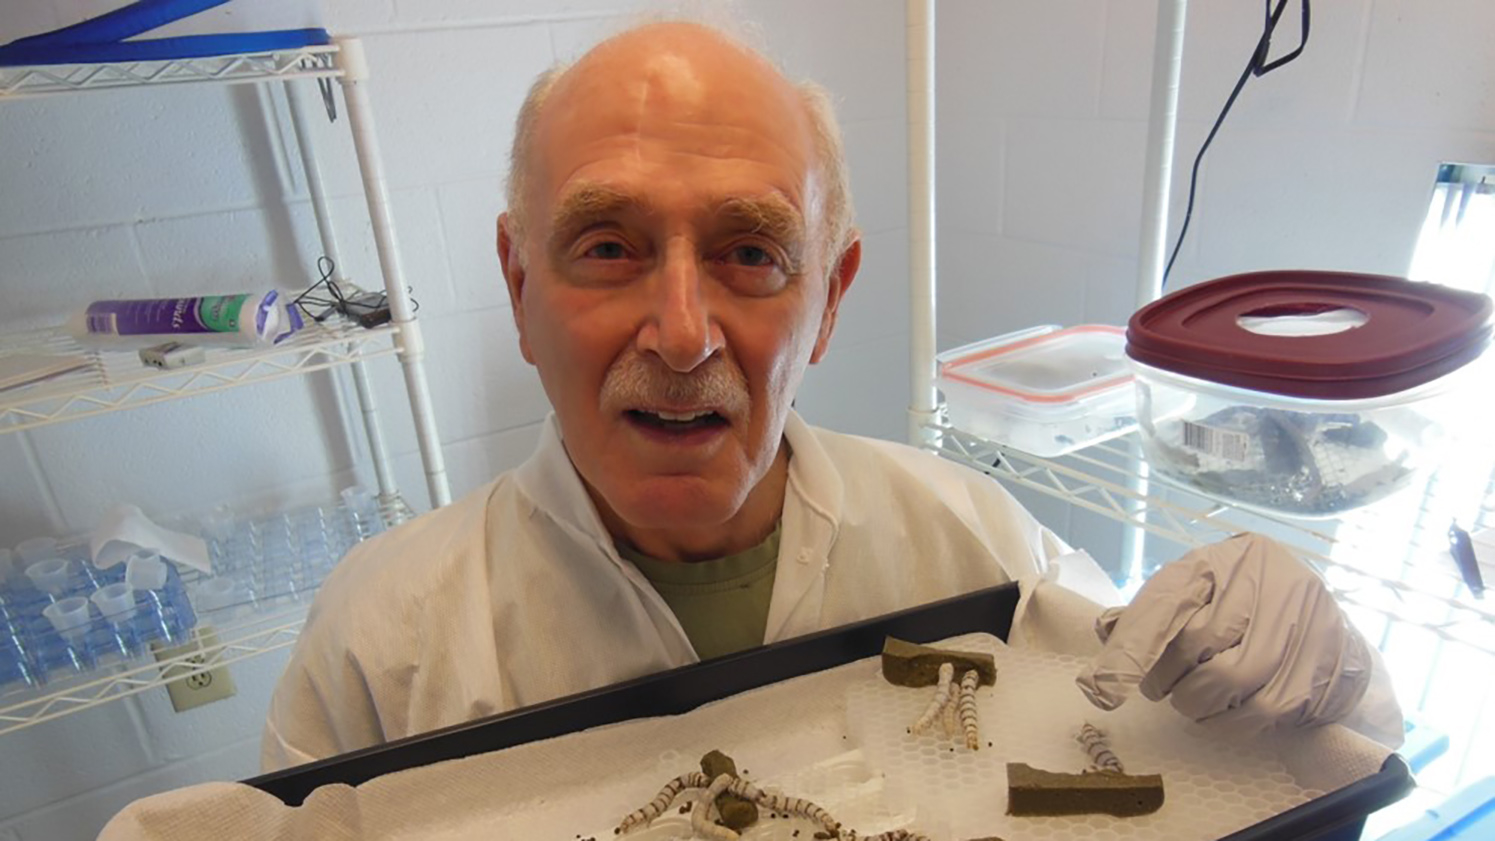 图为艾伦·科恩在他的实验室里拿着一盘蚕。